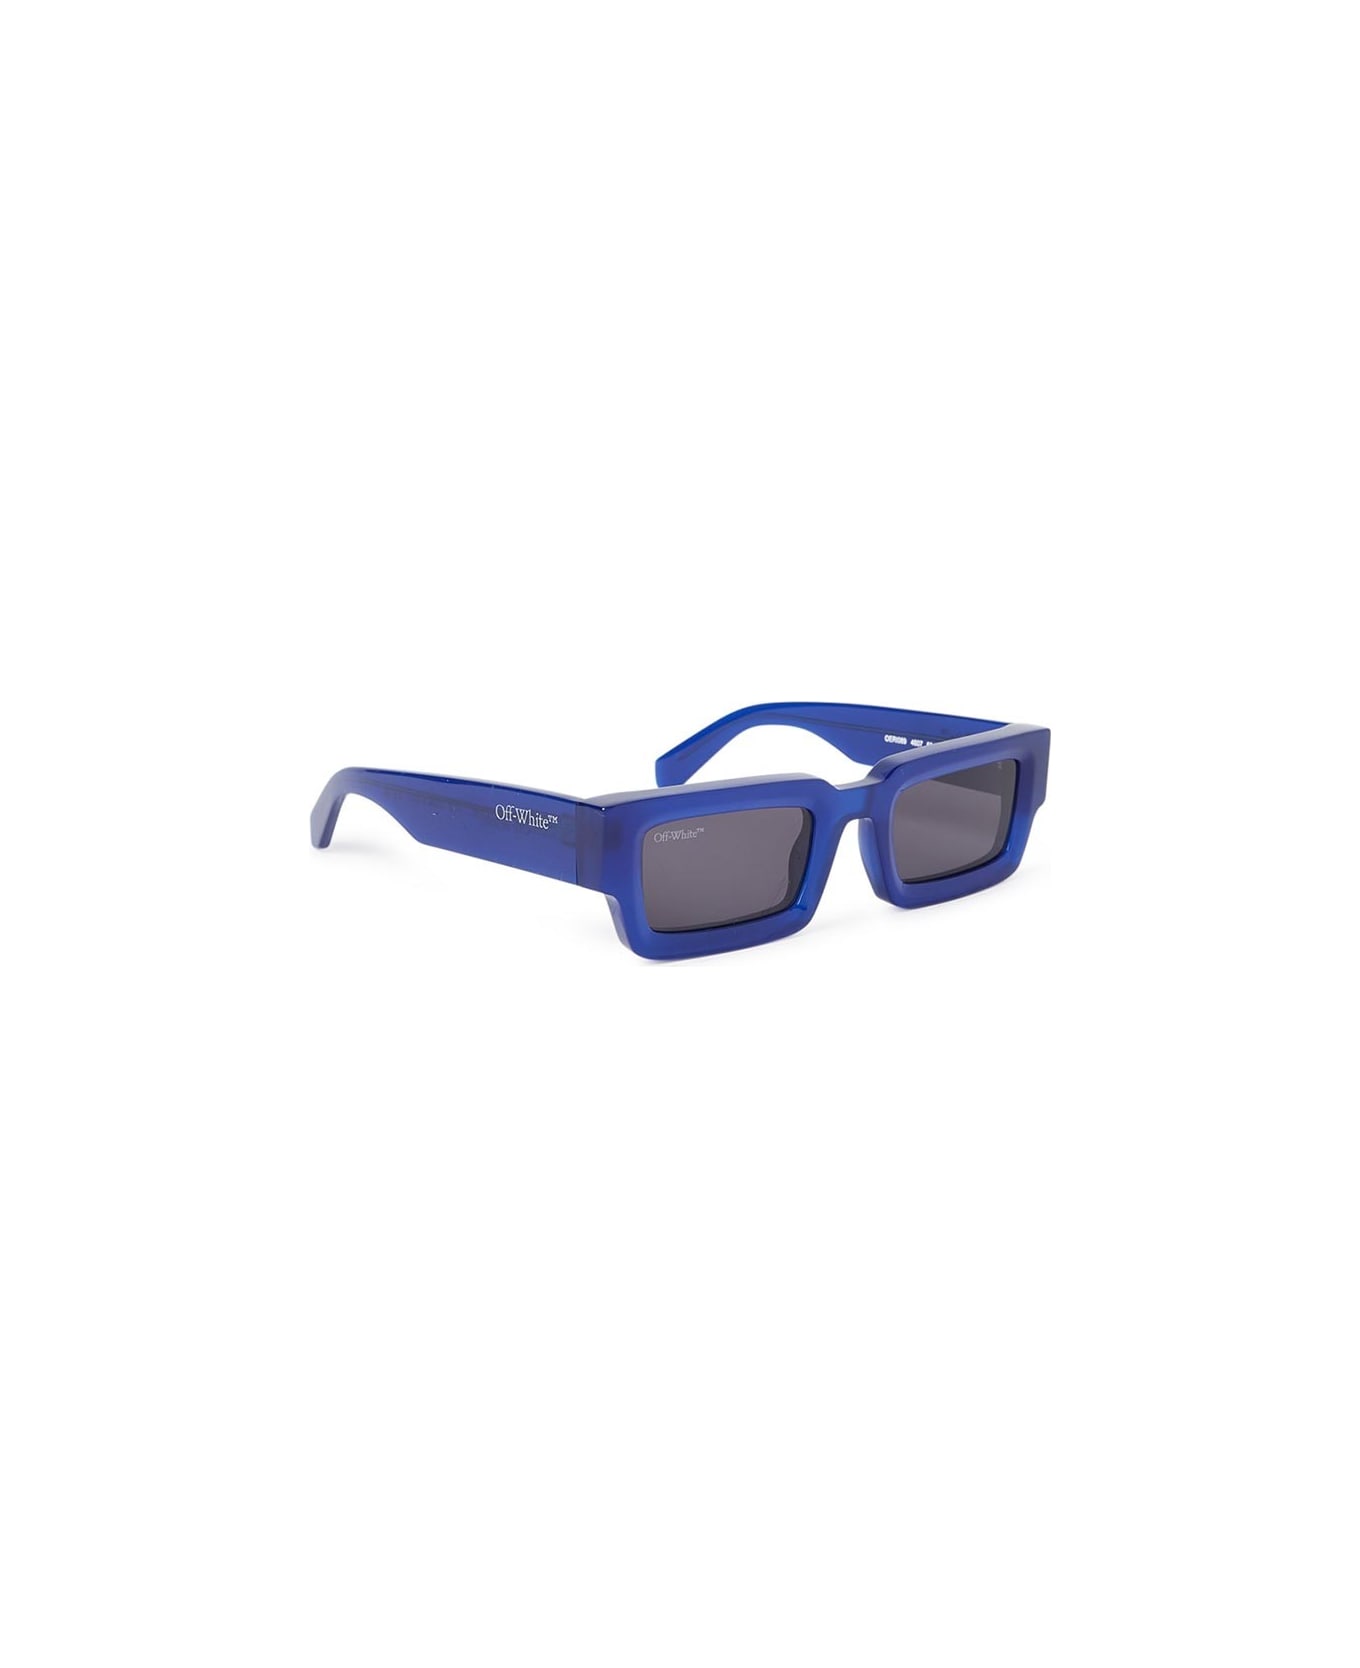 Off-White Lecce Sunglasses - Blu/Grigio